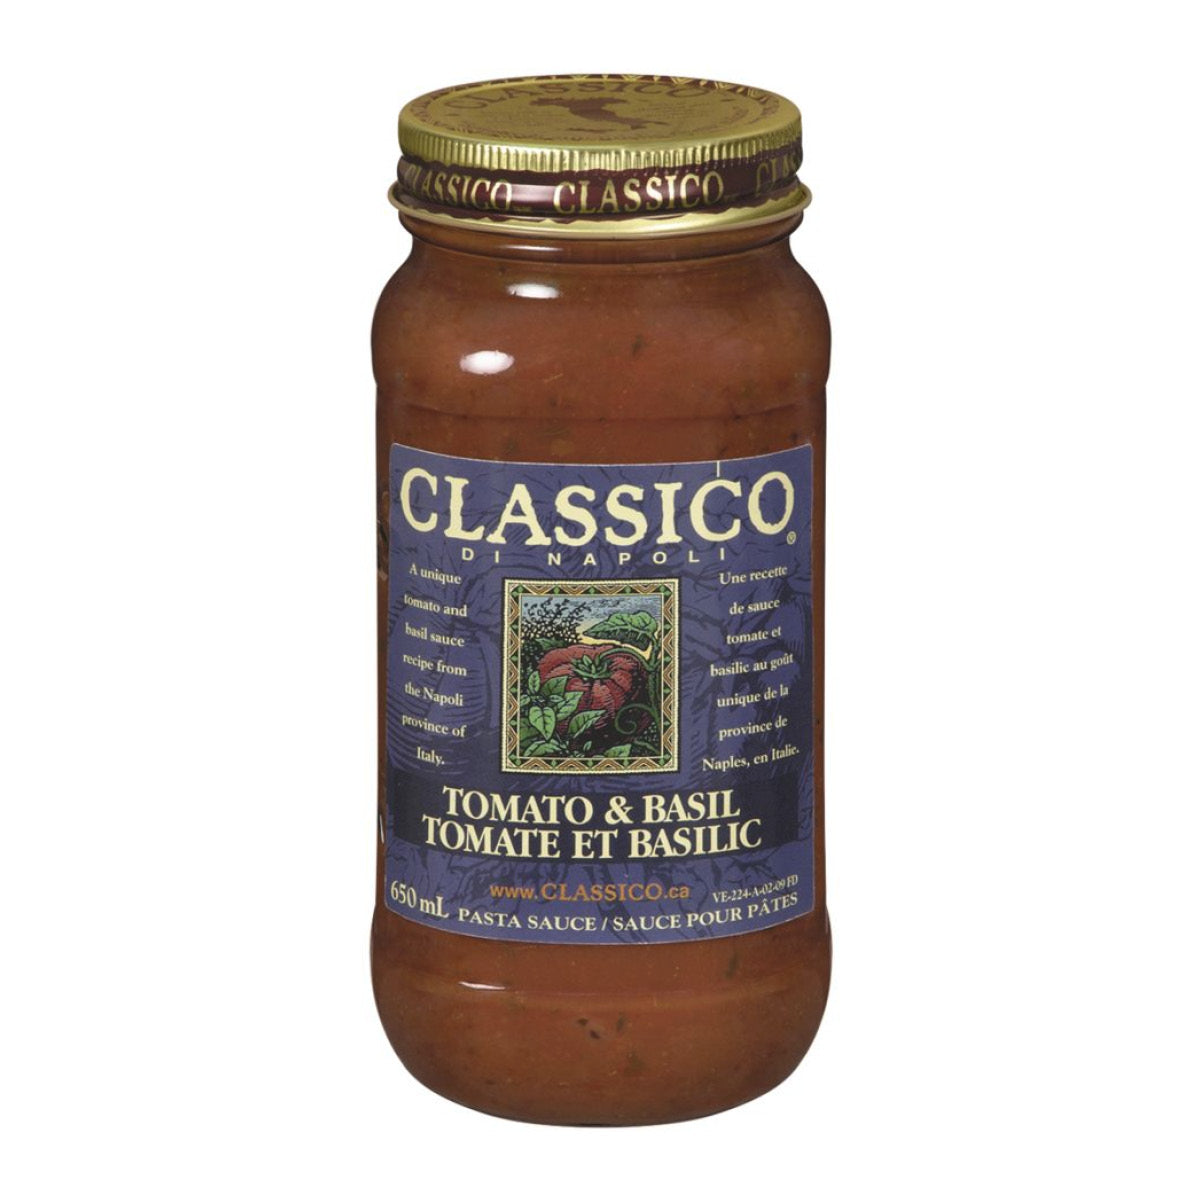 Classico Tomato & Basil Di Napoli Pasta Sauce, 650ml